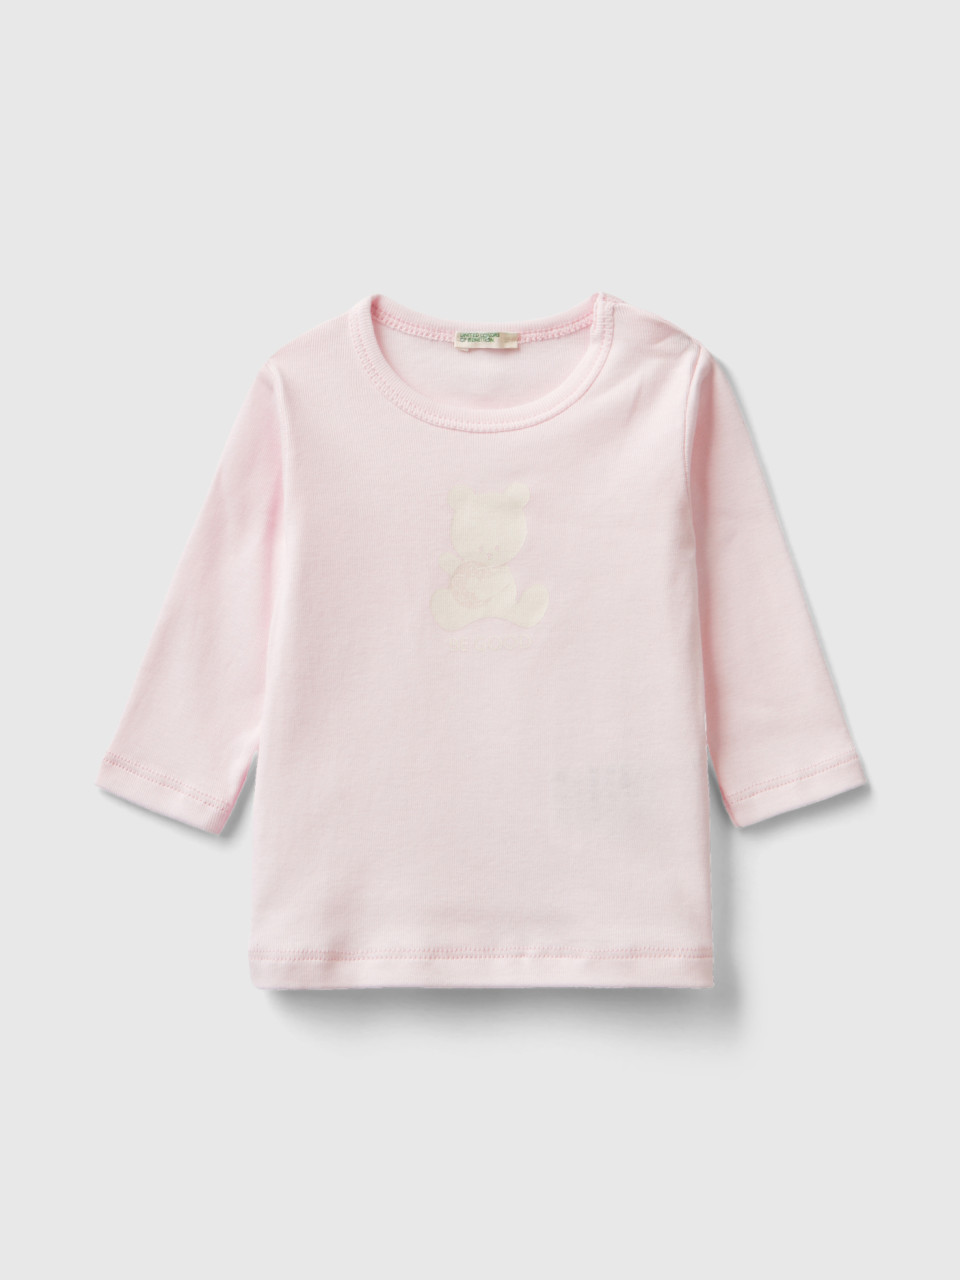 Benetton, Long Sleeve 100% Organic Cotton T-shirt, Soft Pink, Kids